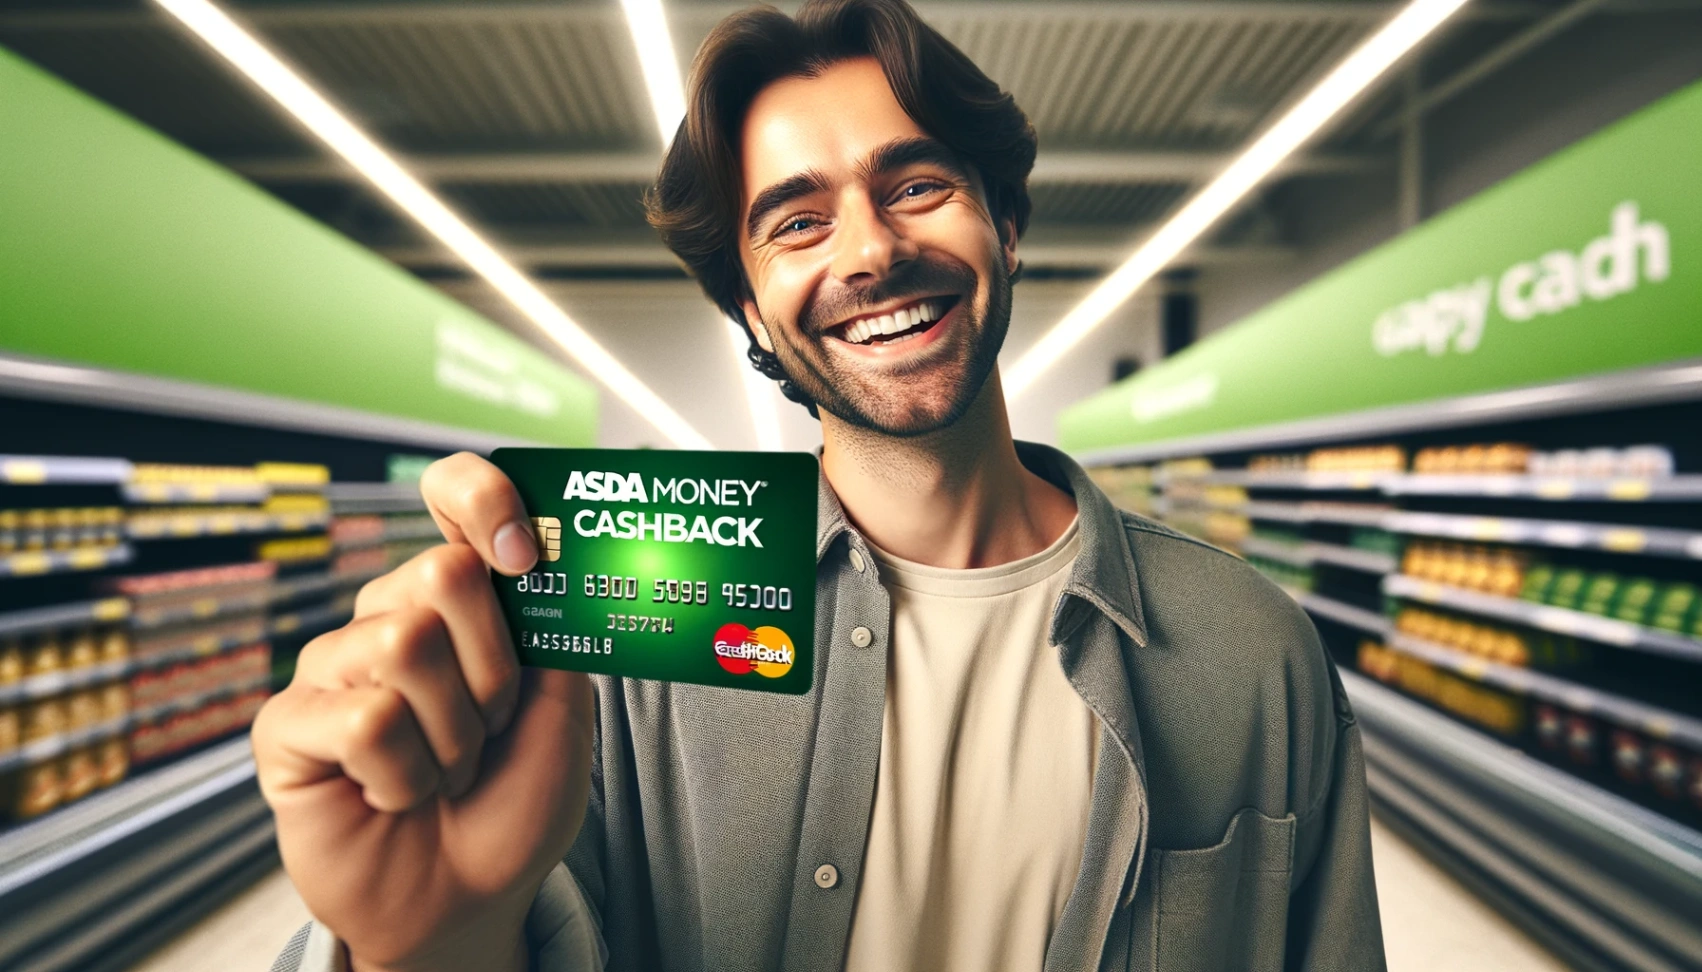 Asda Money Cashback Credit Card - Cómo Solicitar